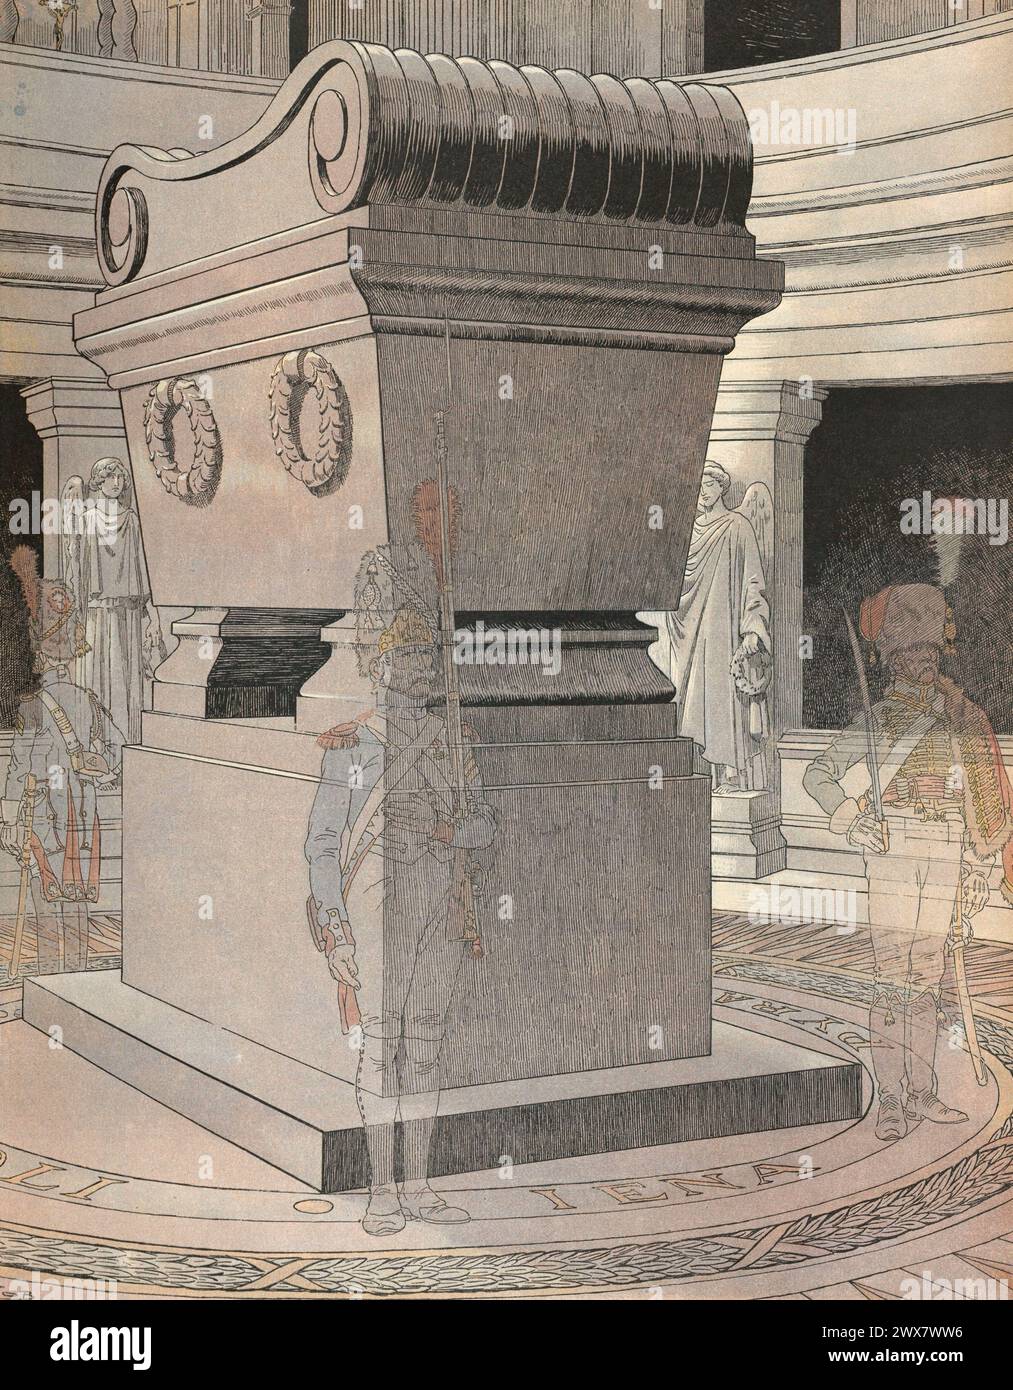 Das Grab von Kaiser Napoleon I. in Les Invalides in Paris, 15. Dezember 1840. Illustration von Job aus dem Buch „Napoléon“ von Georges Montorgueil, veröffentlicht 1921 bei Boivin (Paris). Stockfoto